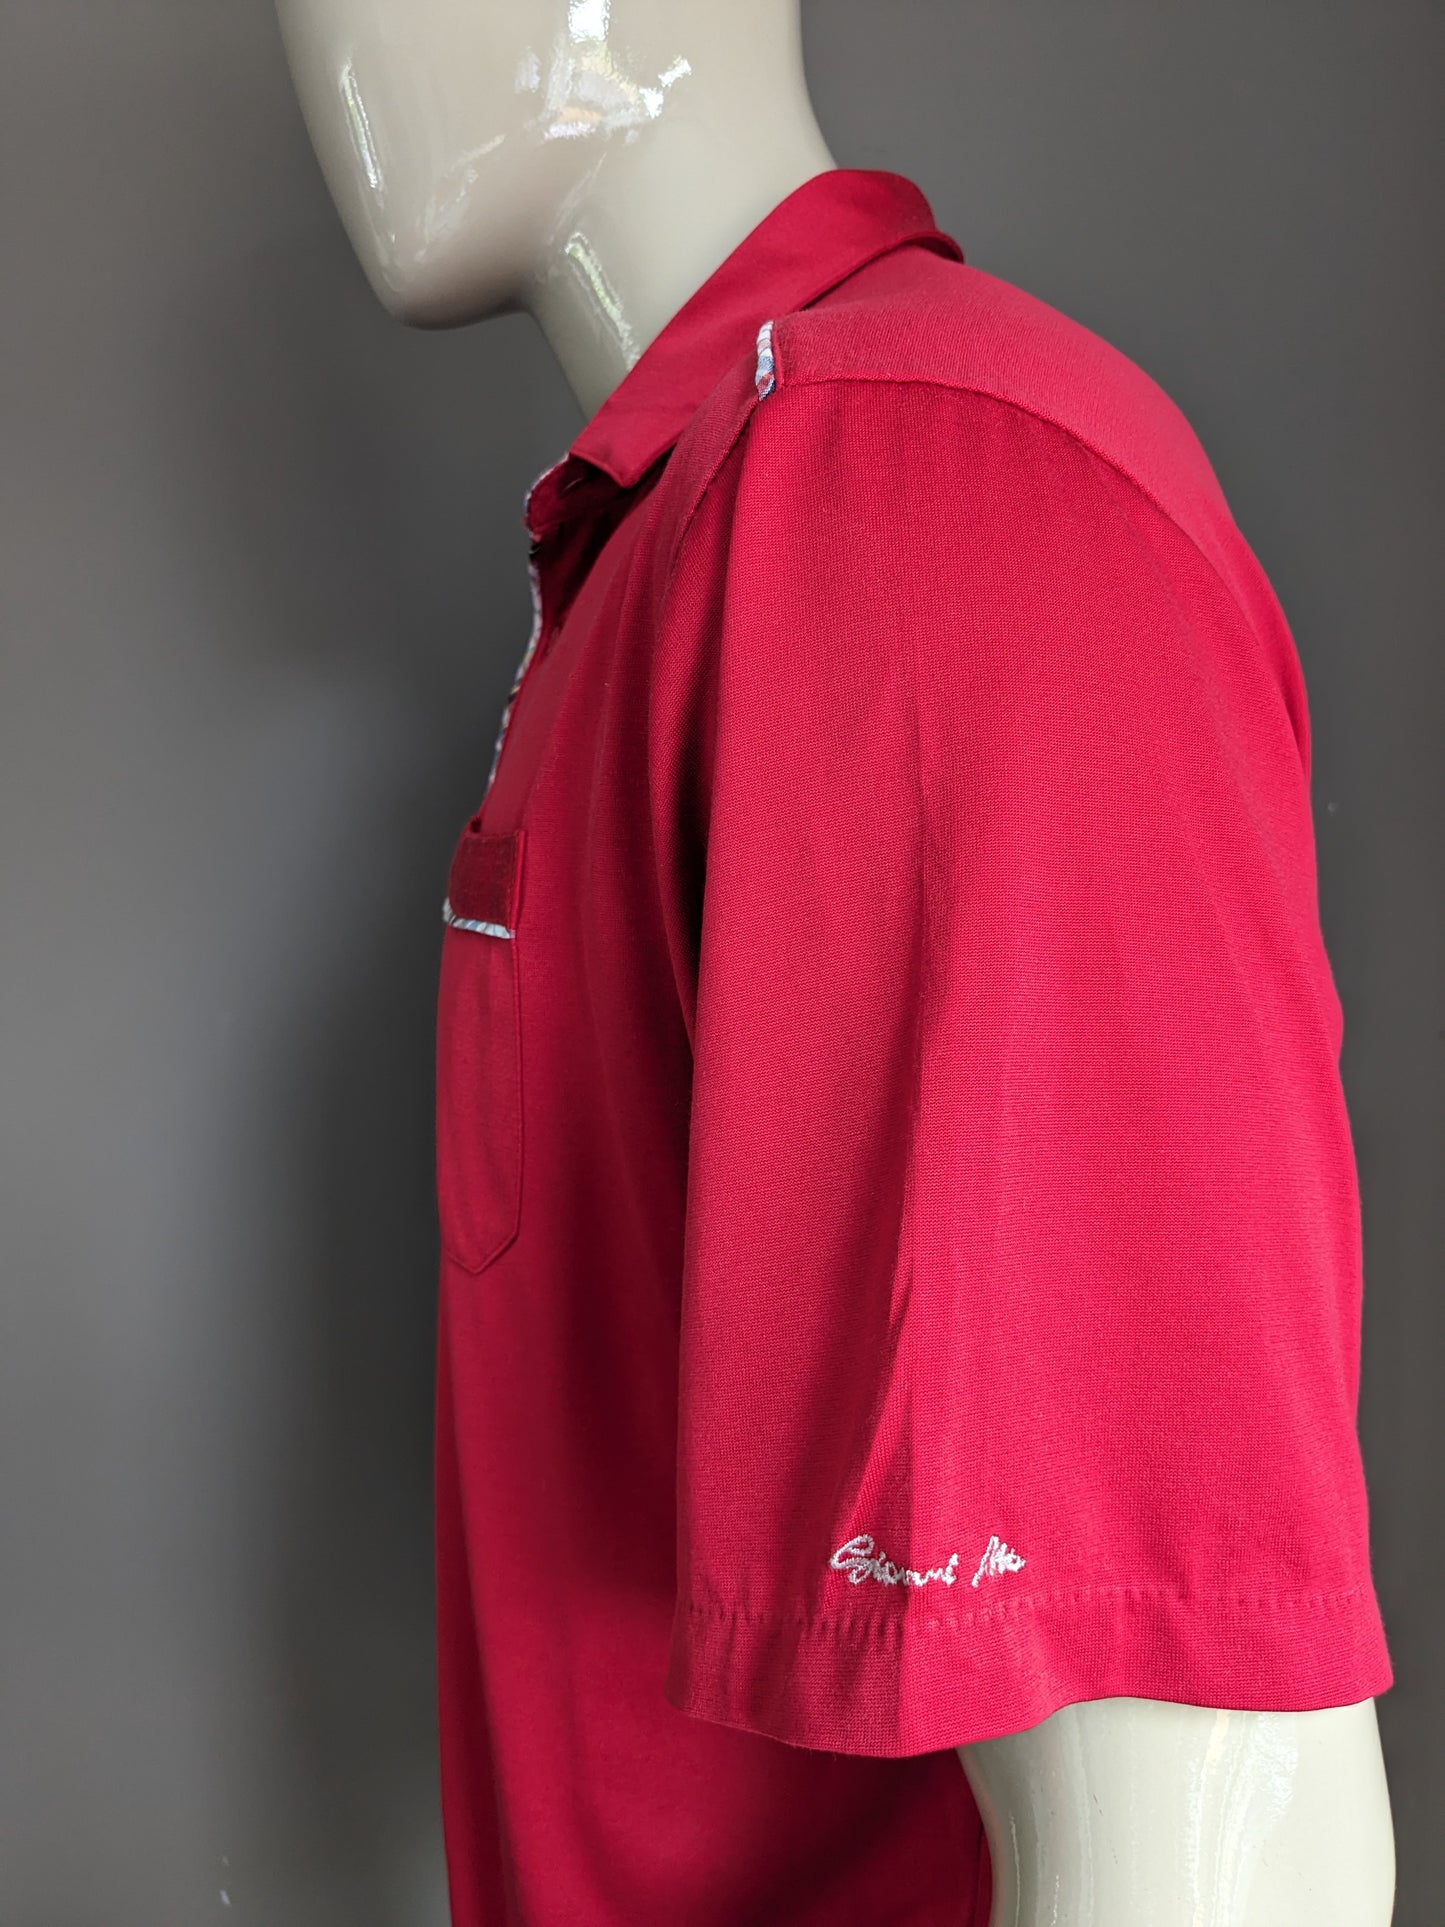 Gianni M di Hajo Vintage Polo con fascia elastica. Rosso colorato. Taglia L / XL.